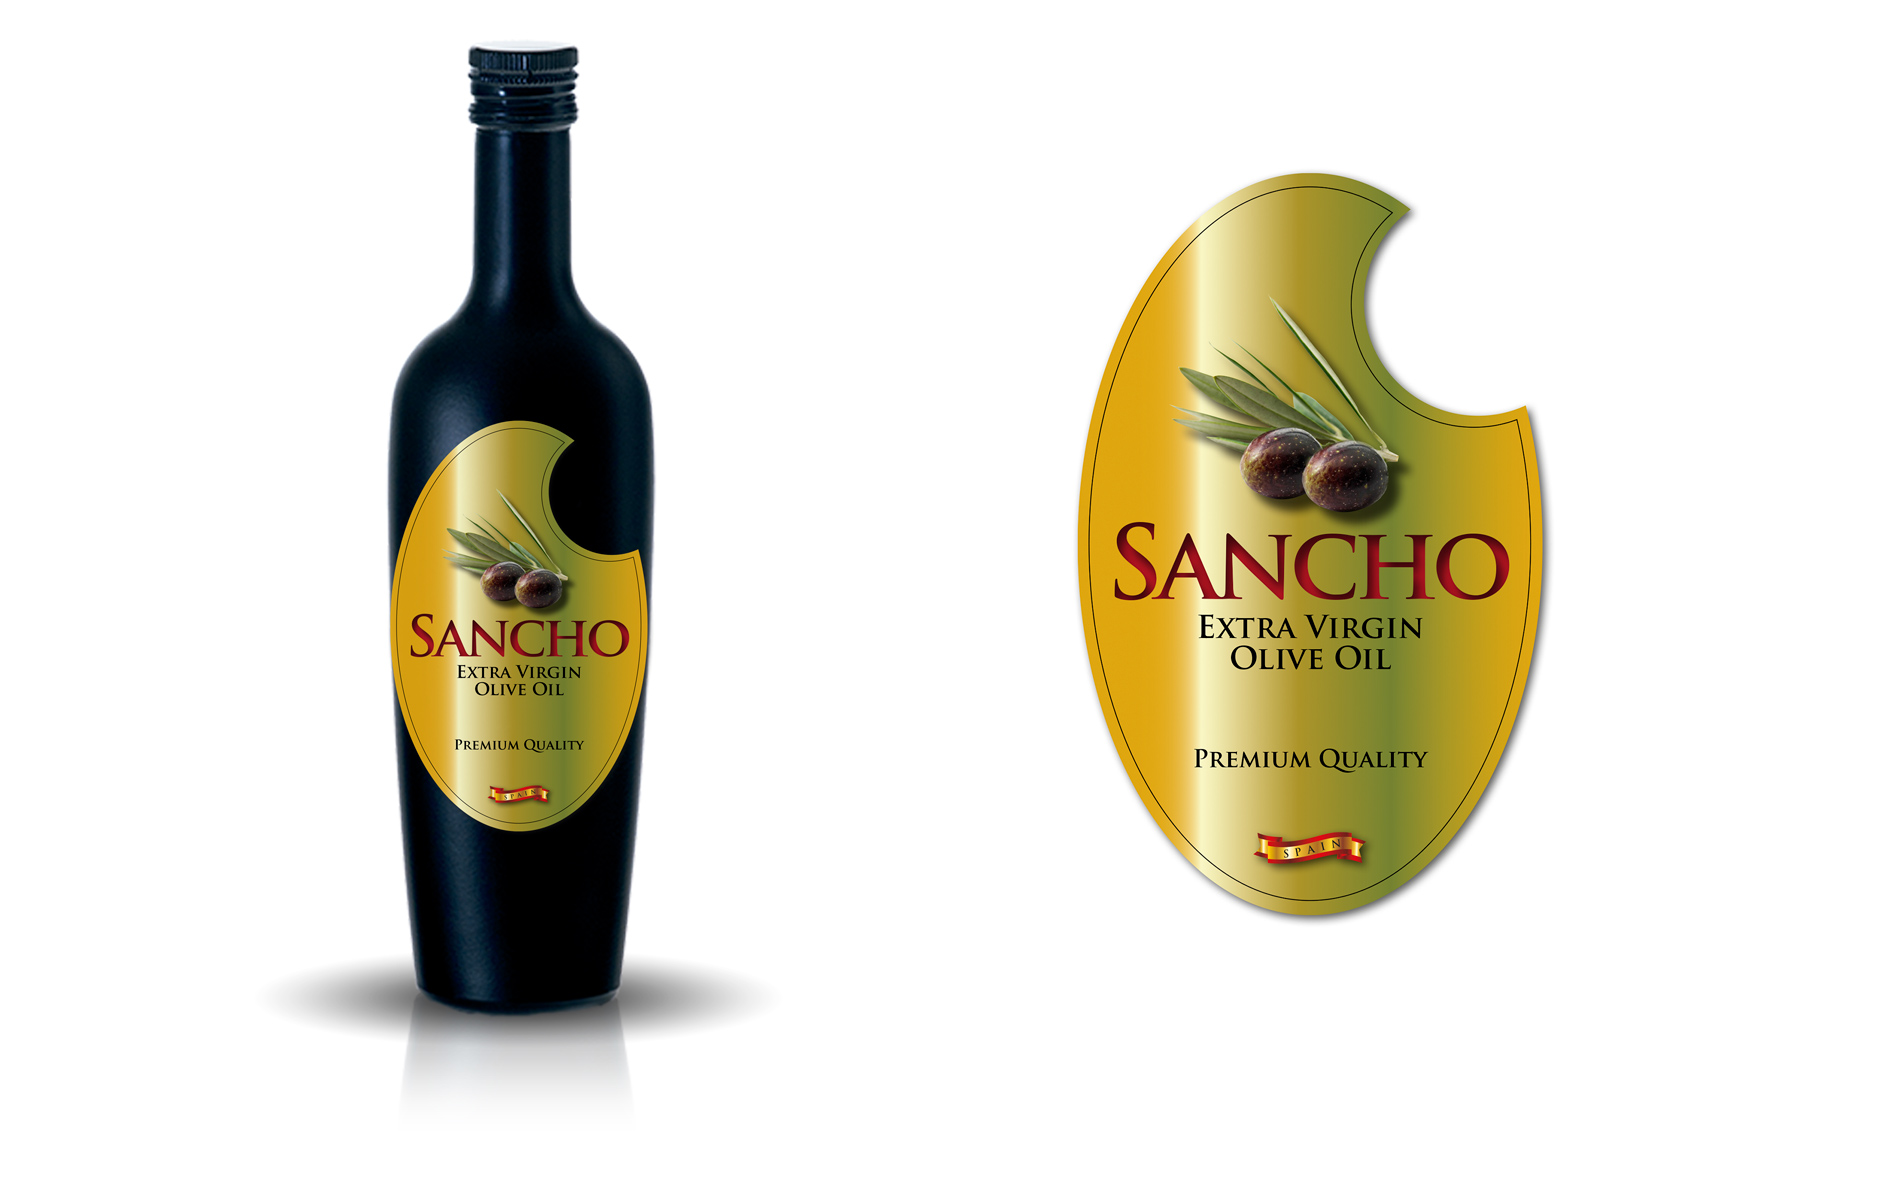 Diseño y creación logo y marca para empresa productora aceite de oliva virgen extra